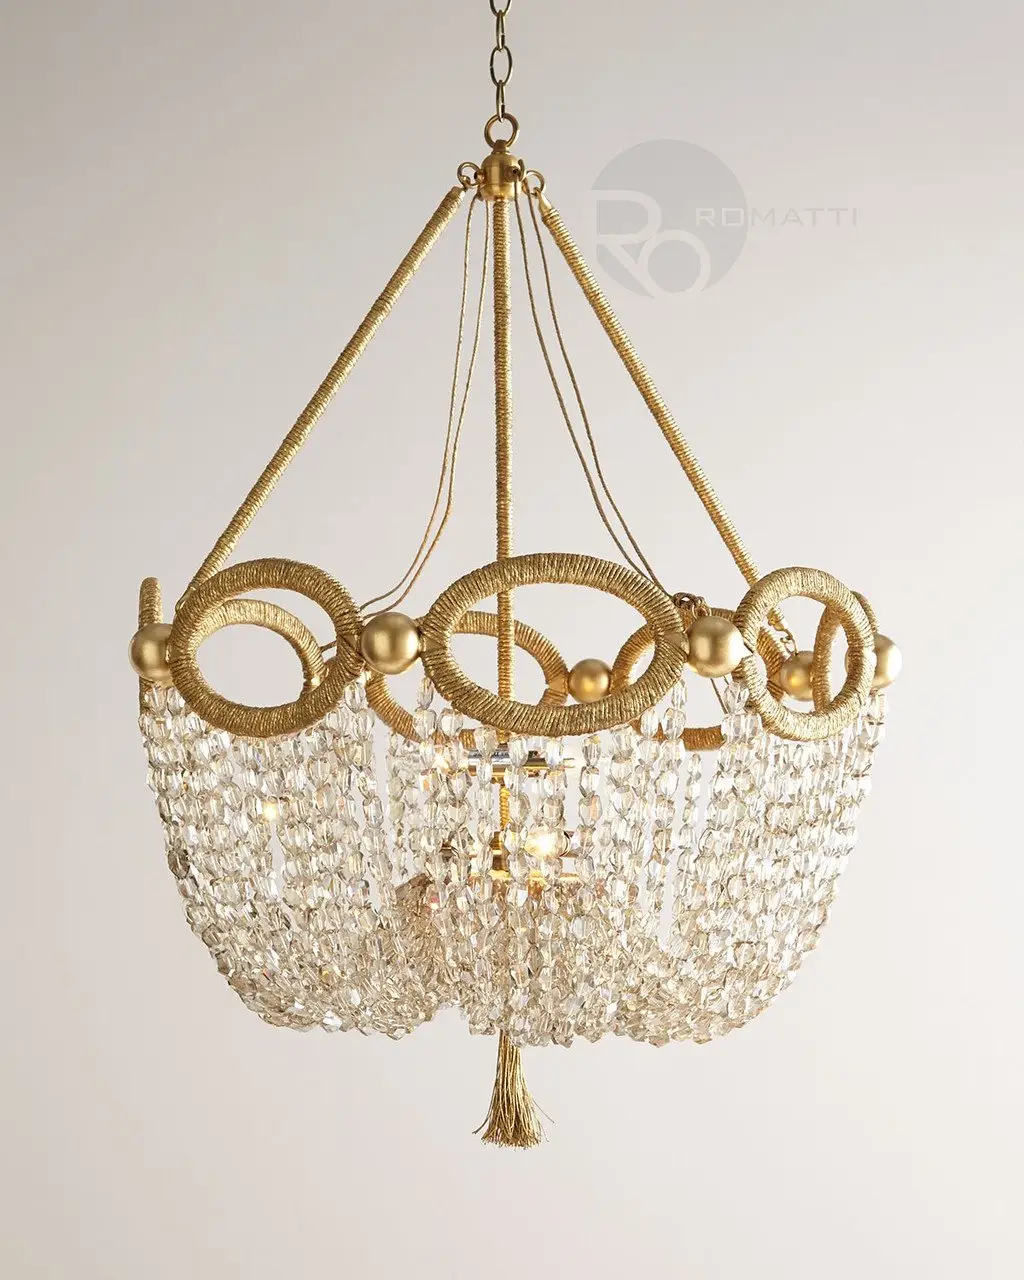 Pontormo chandelier by Romatti